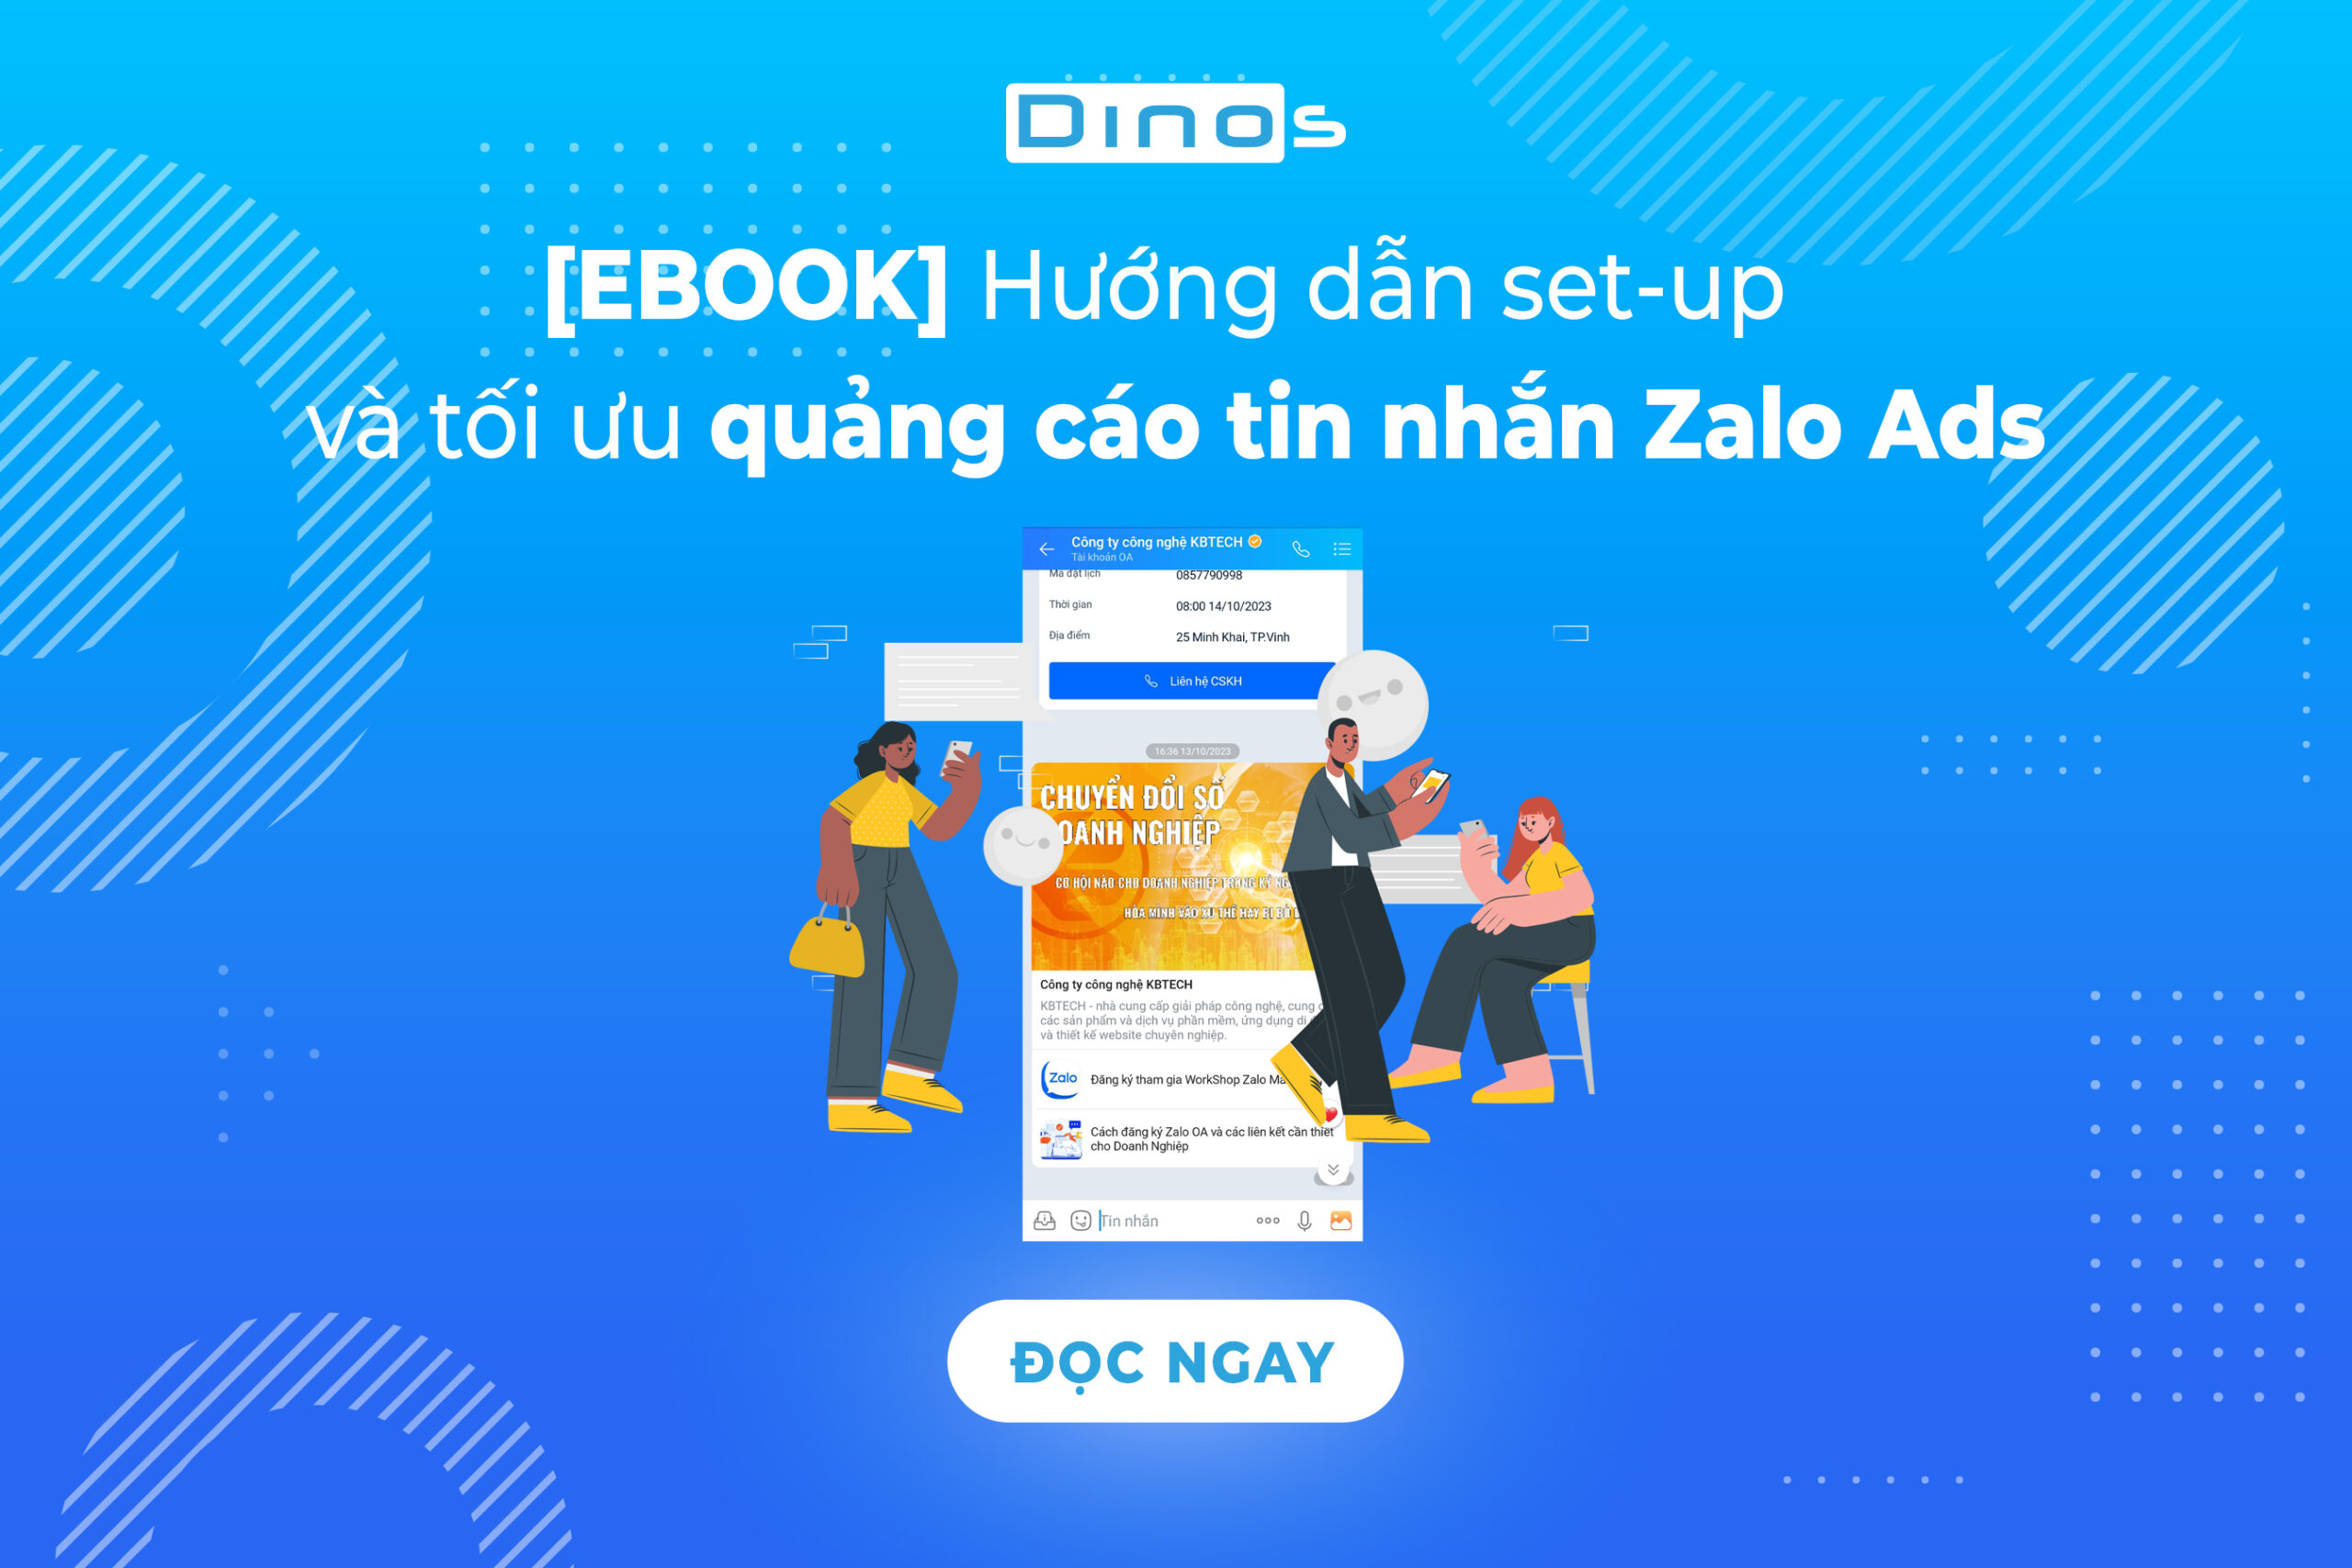 [EBOOK] Hướng dẫn set-up và tối ưu quảng cáo tin nhắn Zalo Ads